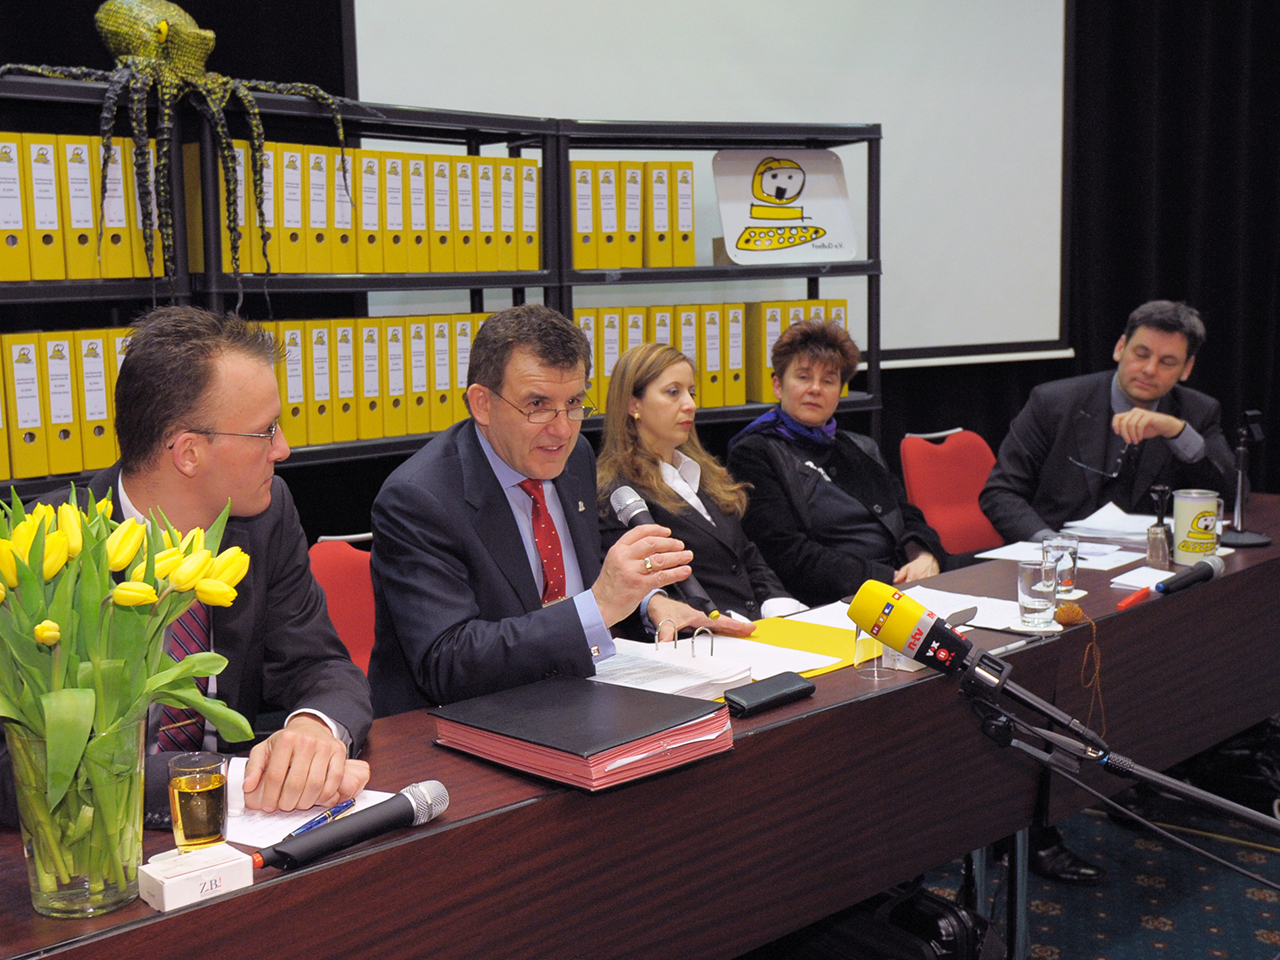 Rena Tangens und padeluun am Tisch bei der Pressekonferenz vor einem Regal mit einer Menge gelber Ordner